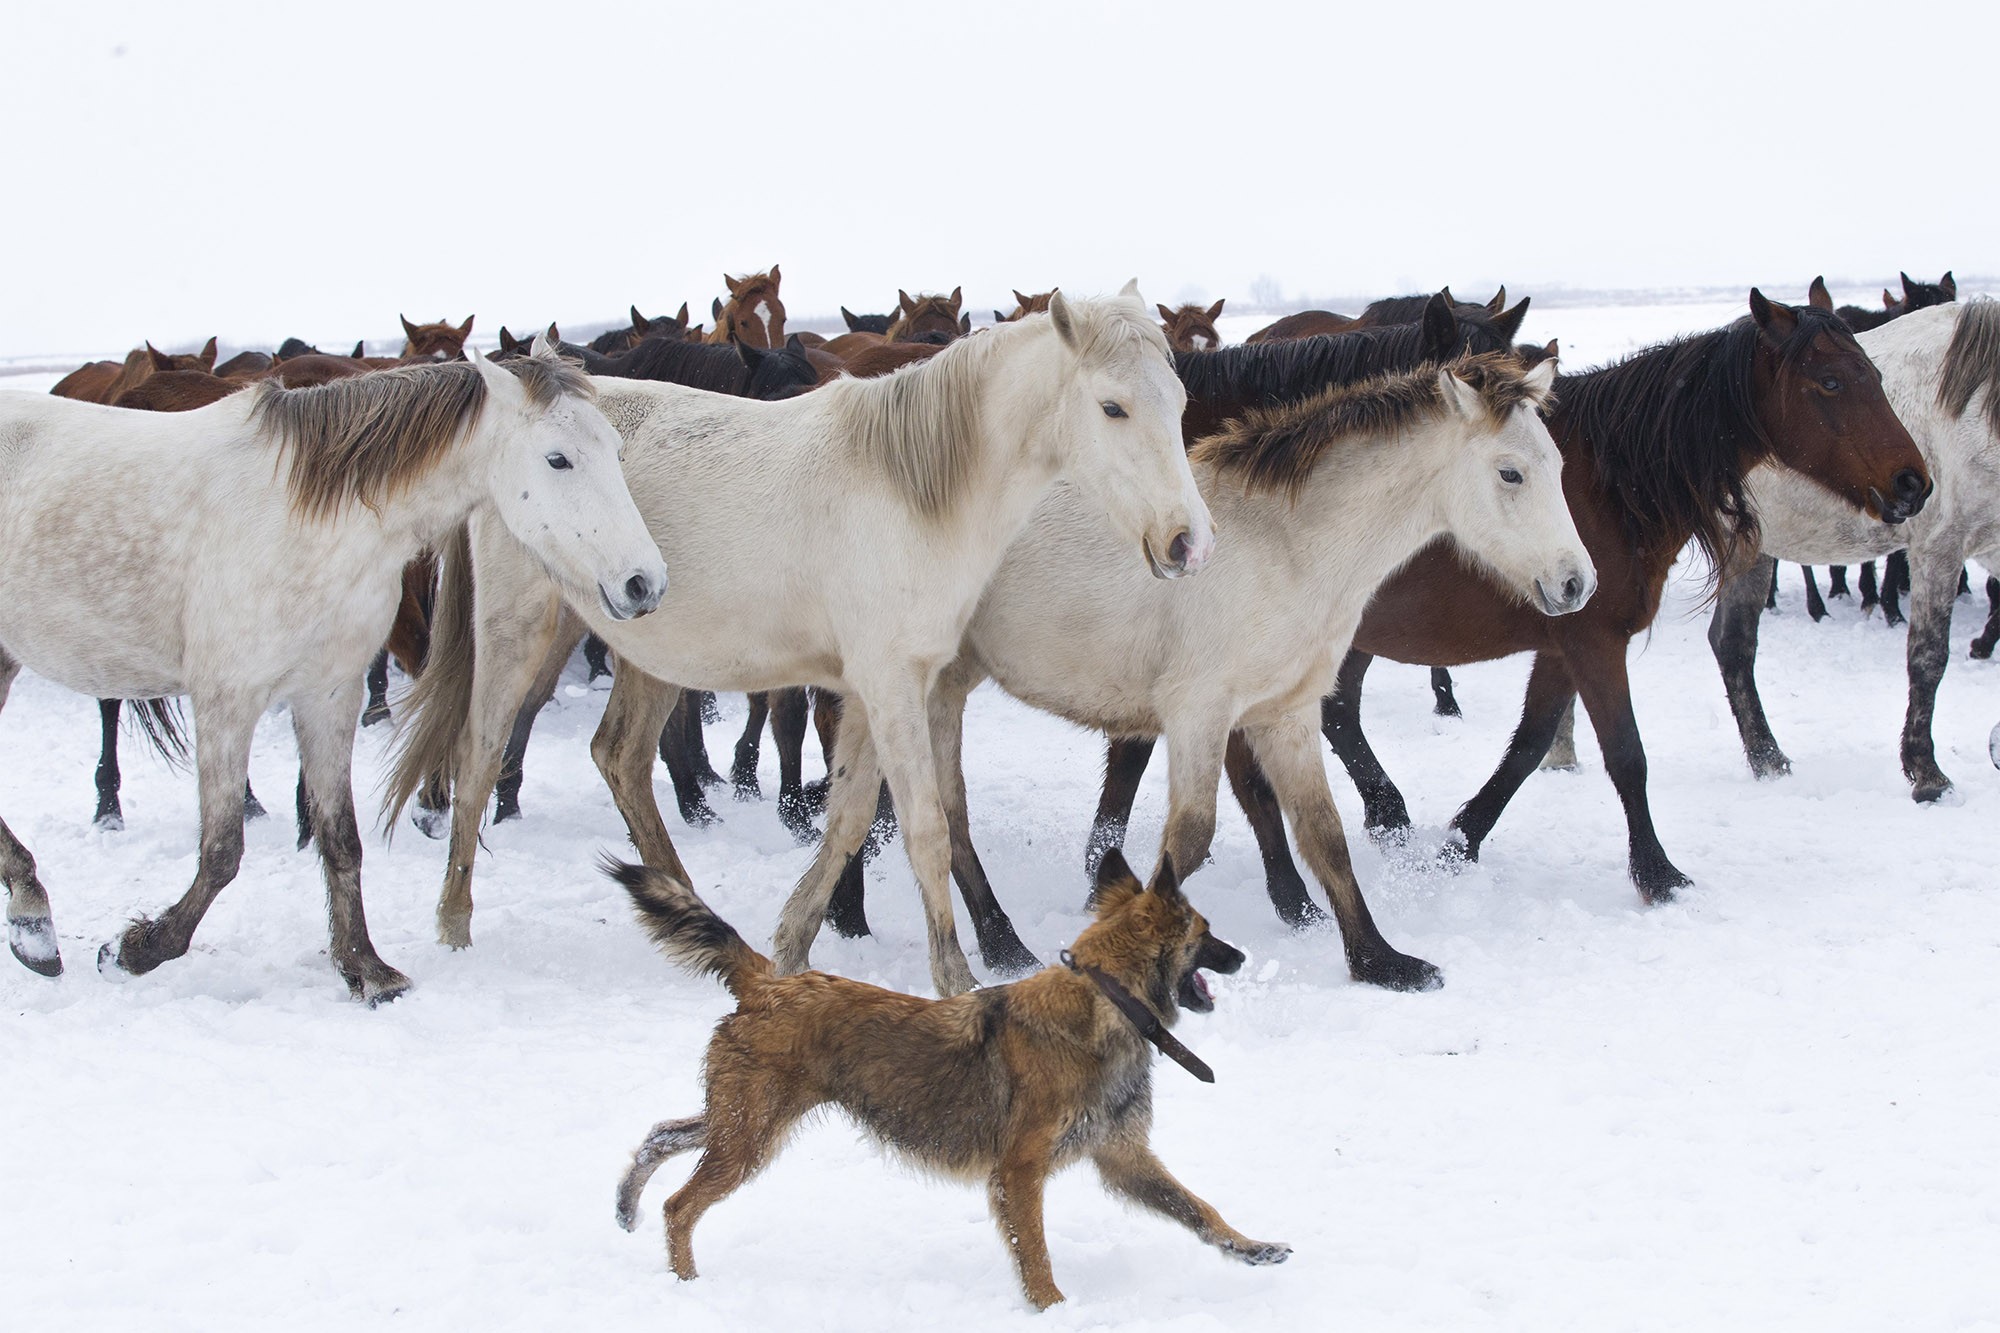 Cachorros e cavalos se comunicam com expressões faciais durante brincadeiras, aponta estudo thumbnail